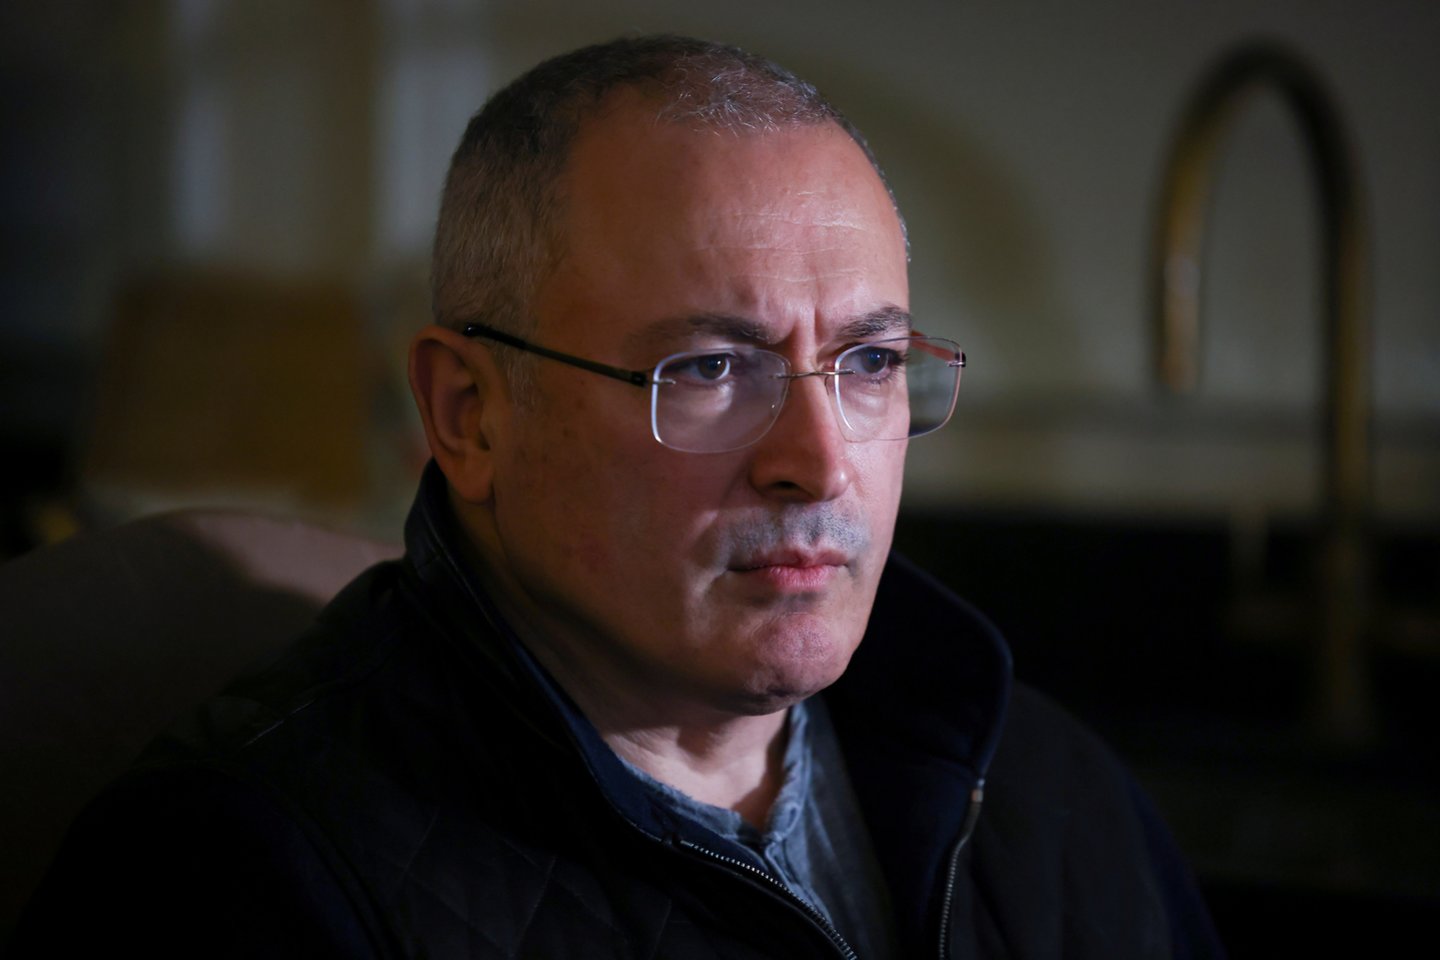  Rusijoje užblokuoti keli su M. Chodorkovskio organizacijomis siejami tinklalapiai.  <br> Reuters/Scanpix nuotr.